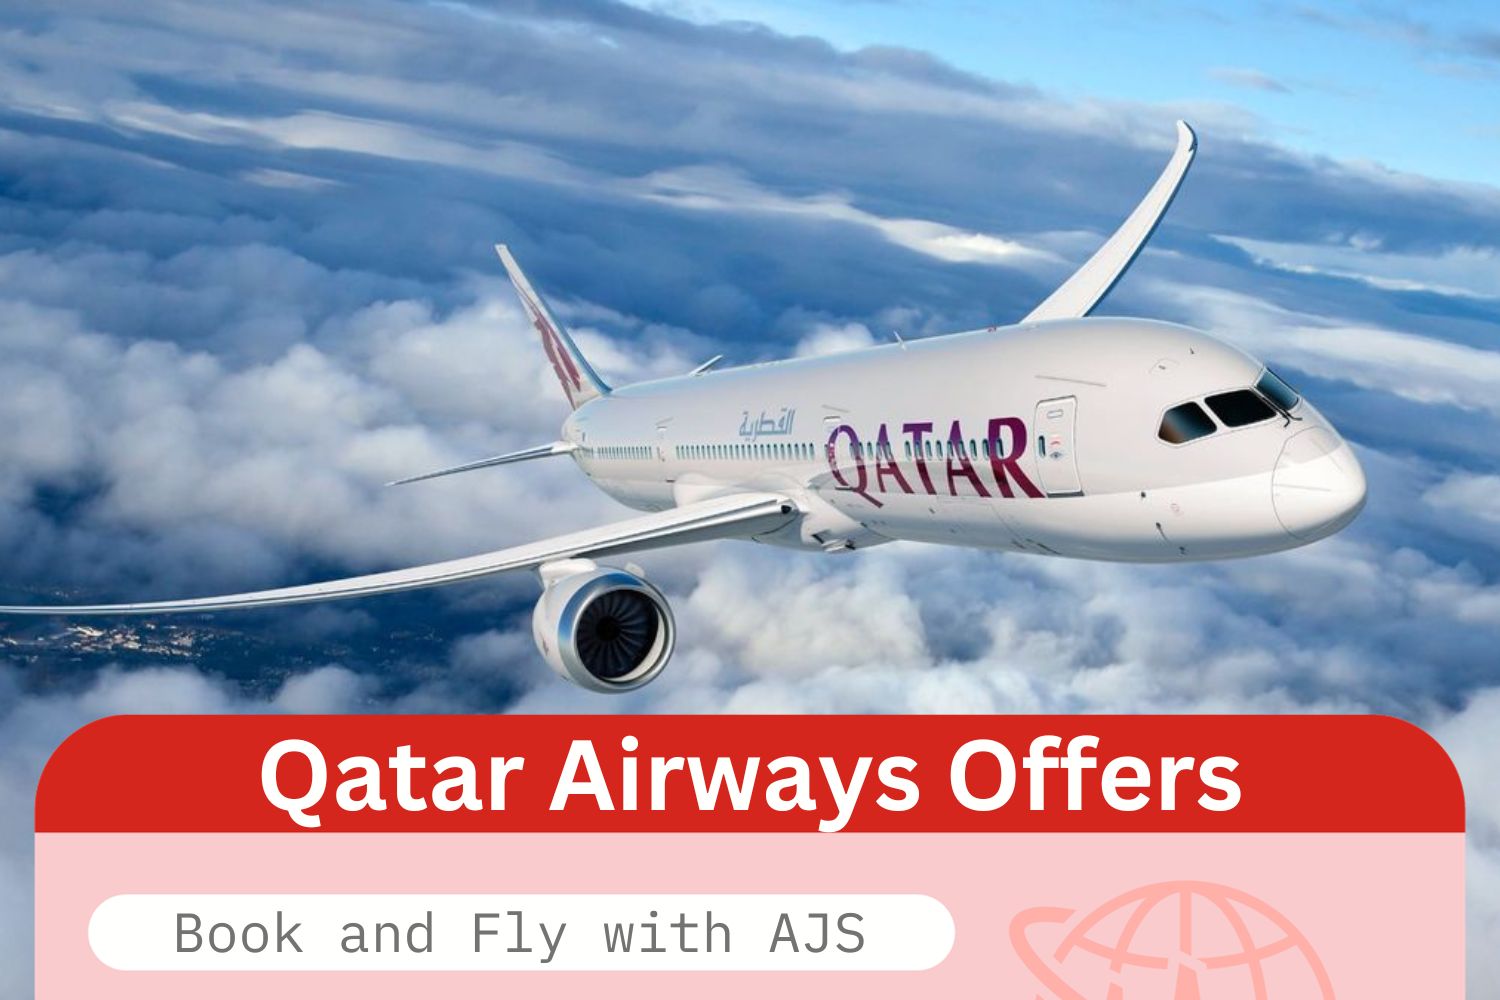 QATAR AIRWAYS AJS TRAVELS